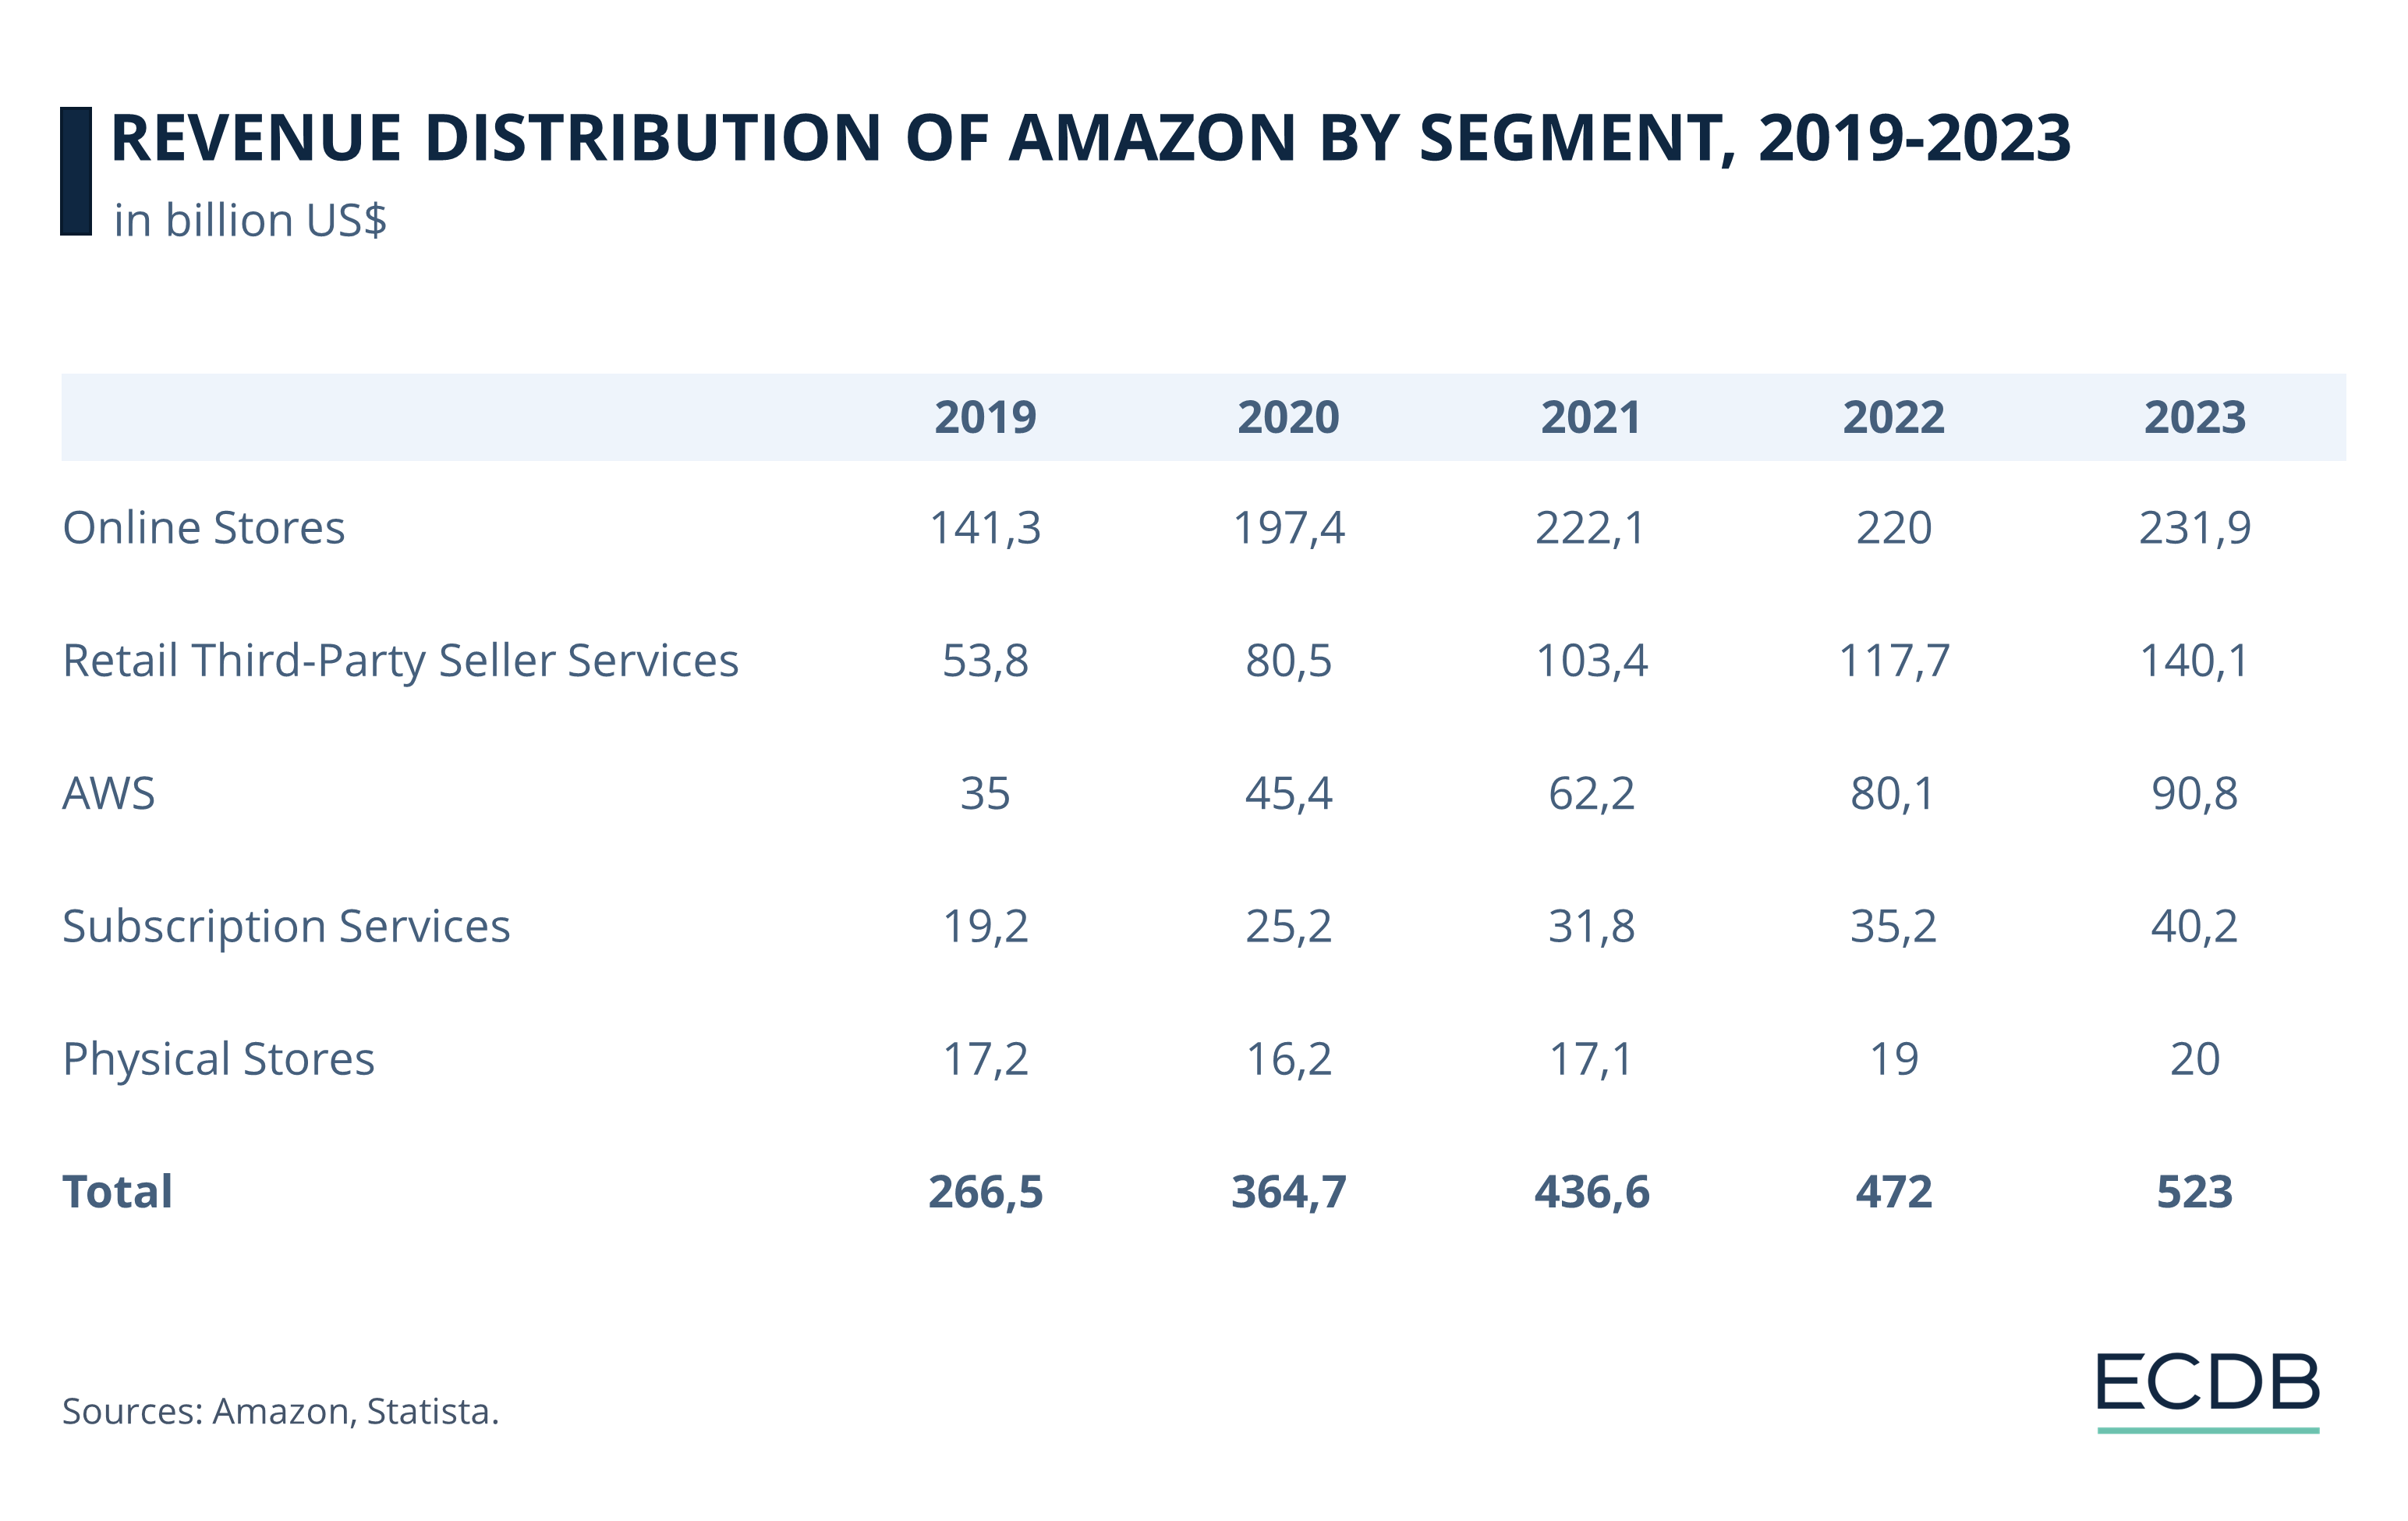 Revenue Distribution of Amazon by Segment, 2019-2023